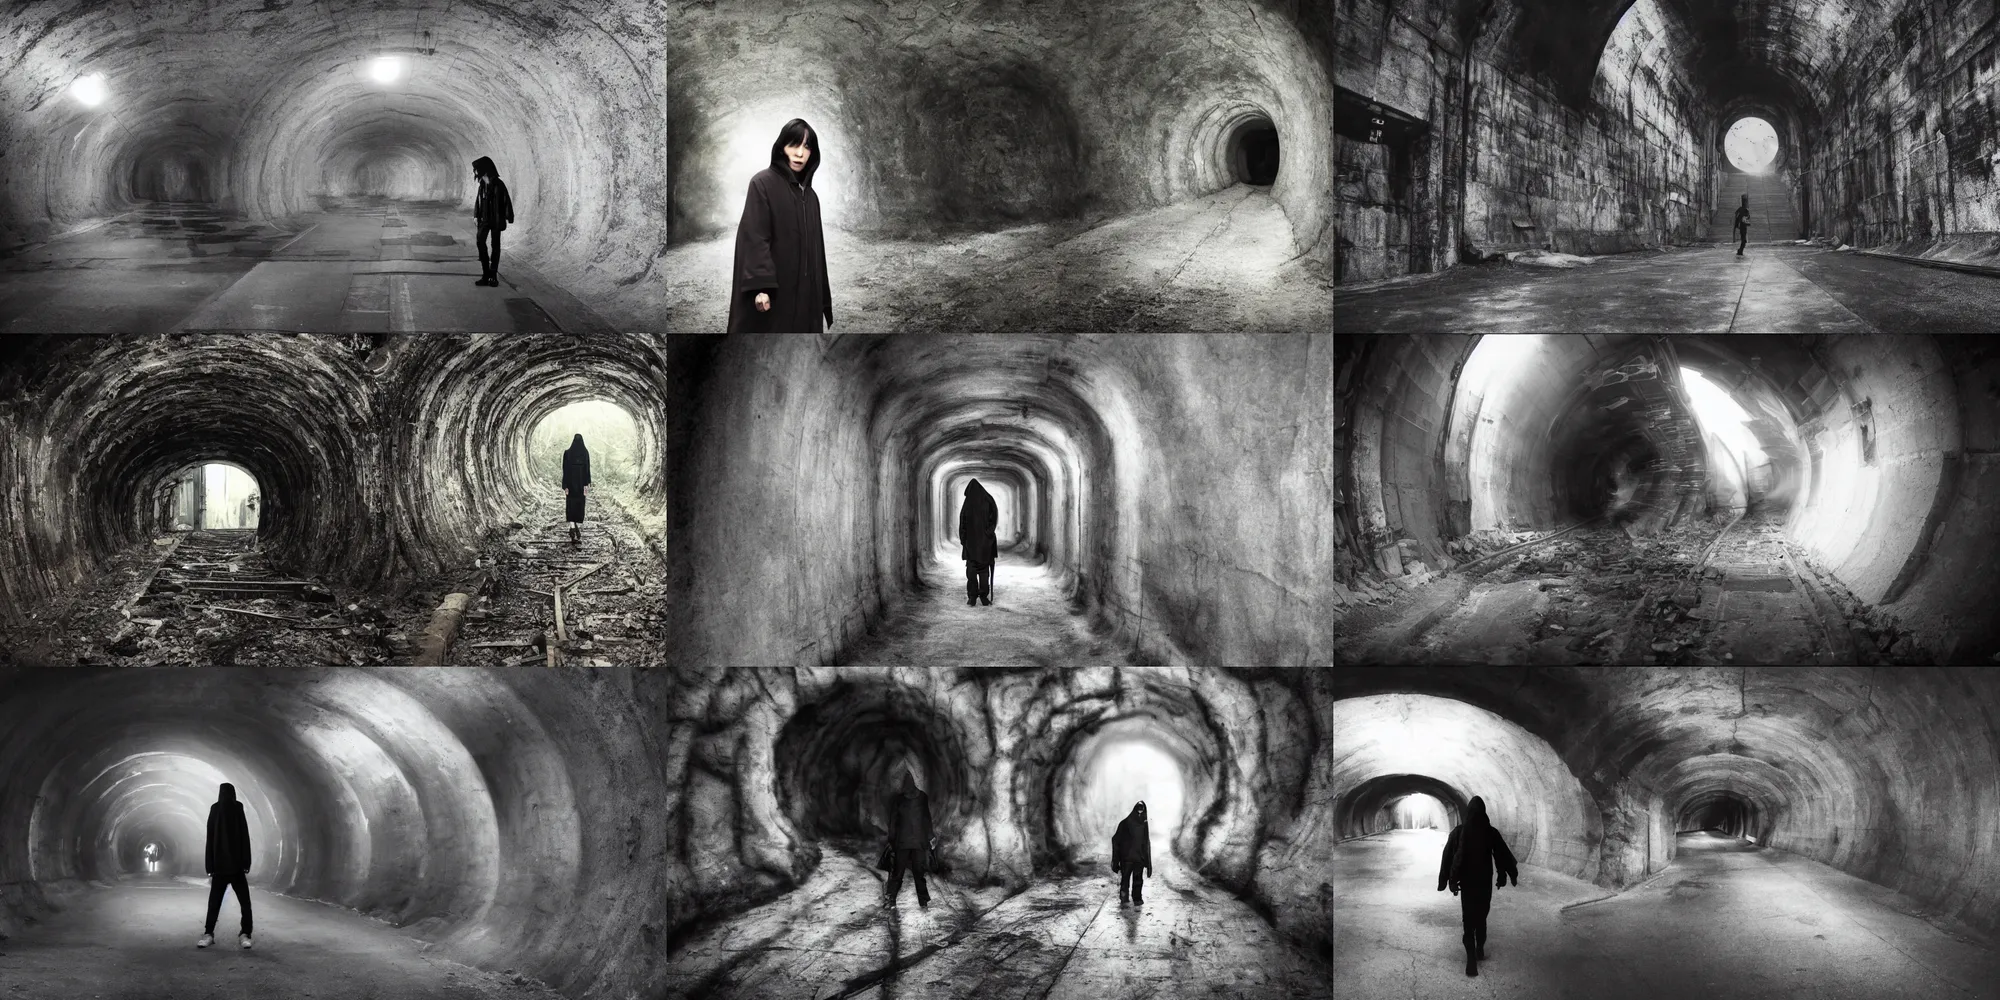 Prompt: mamoru oshii movie scene, hoodie explore, outside a dark train tunnel entrance